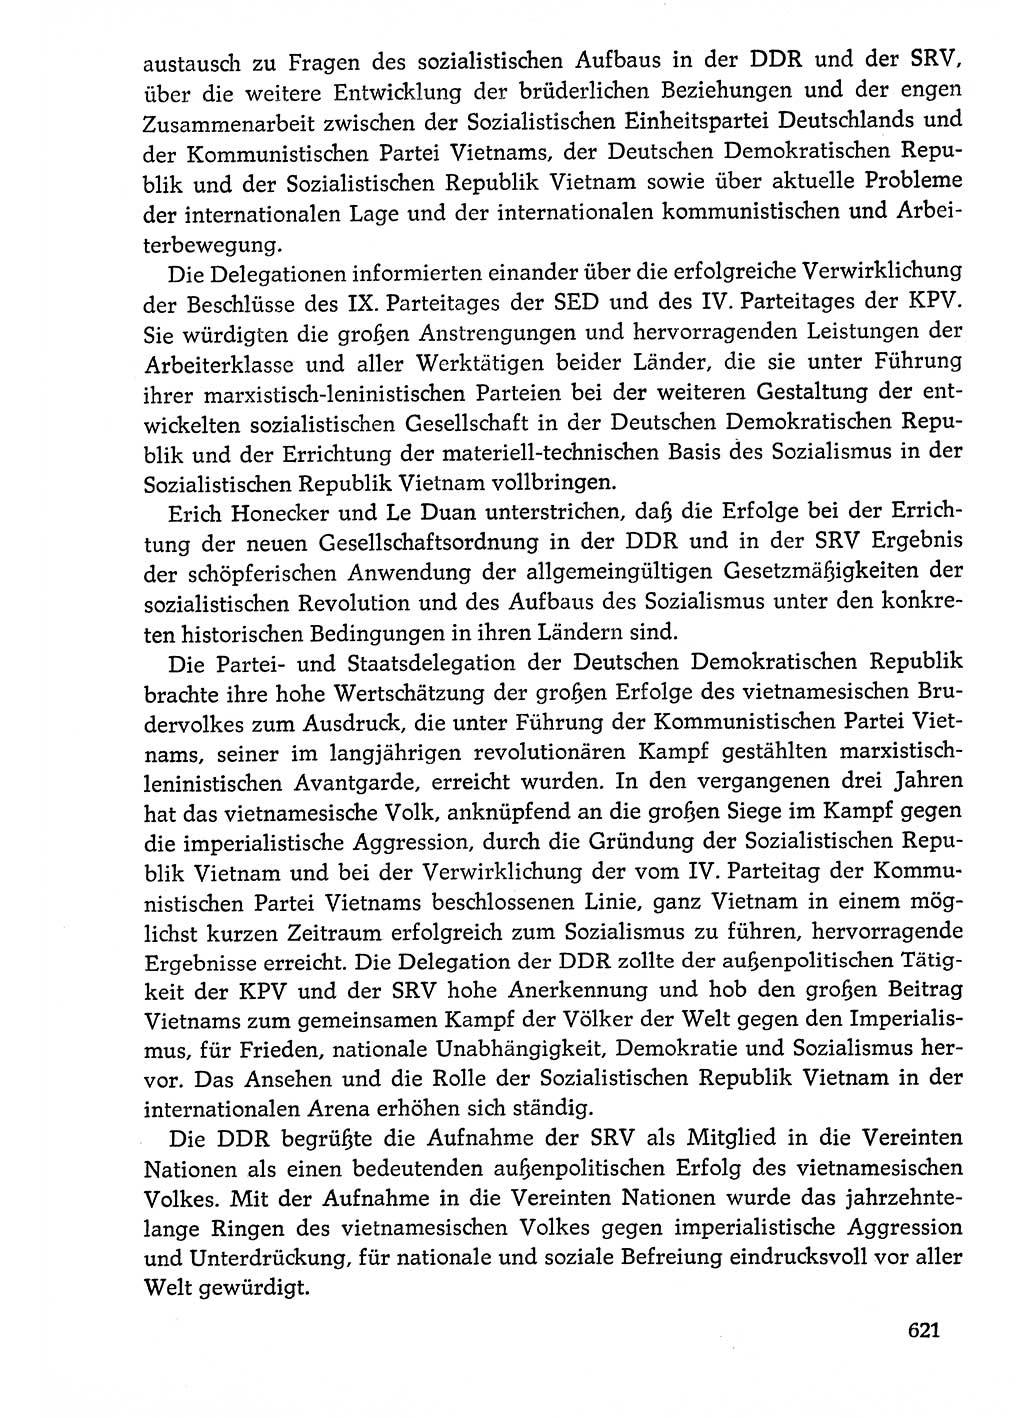 Dokumente der Sozialistischen Einheitspartei Deutschlands (SED) [Deutsche Demokratische Republik (DDR)] 1976-1977, Seite 621 (Dok. SED DDR 1976-1977, S. 621)